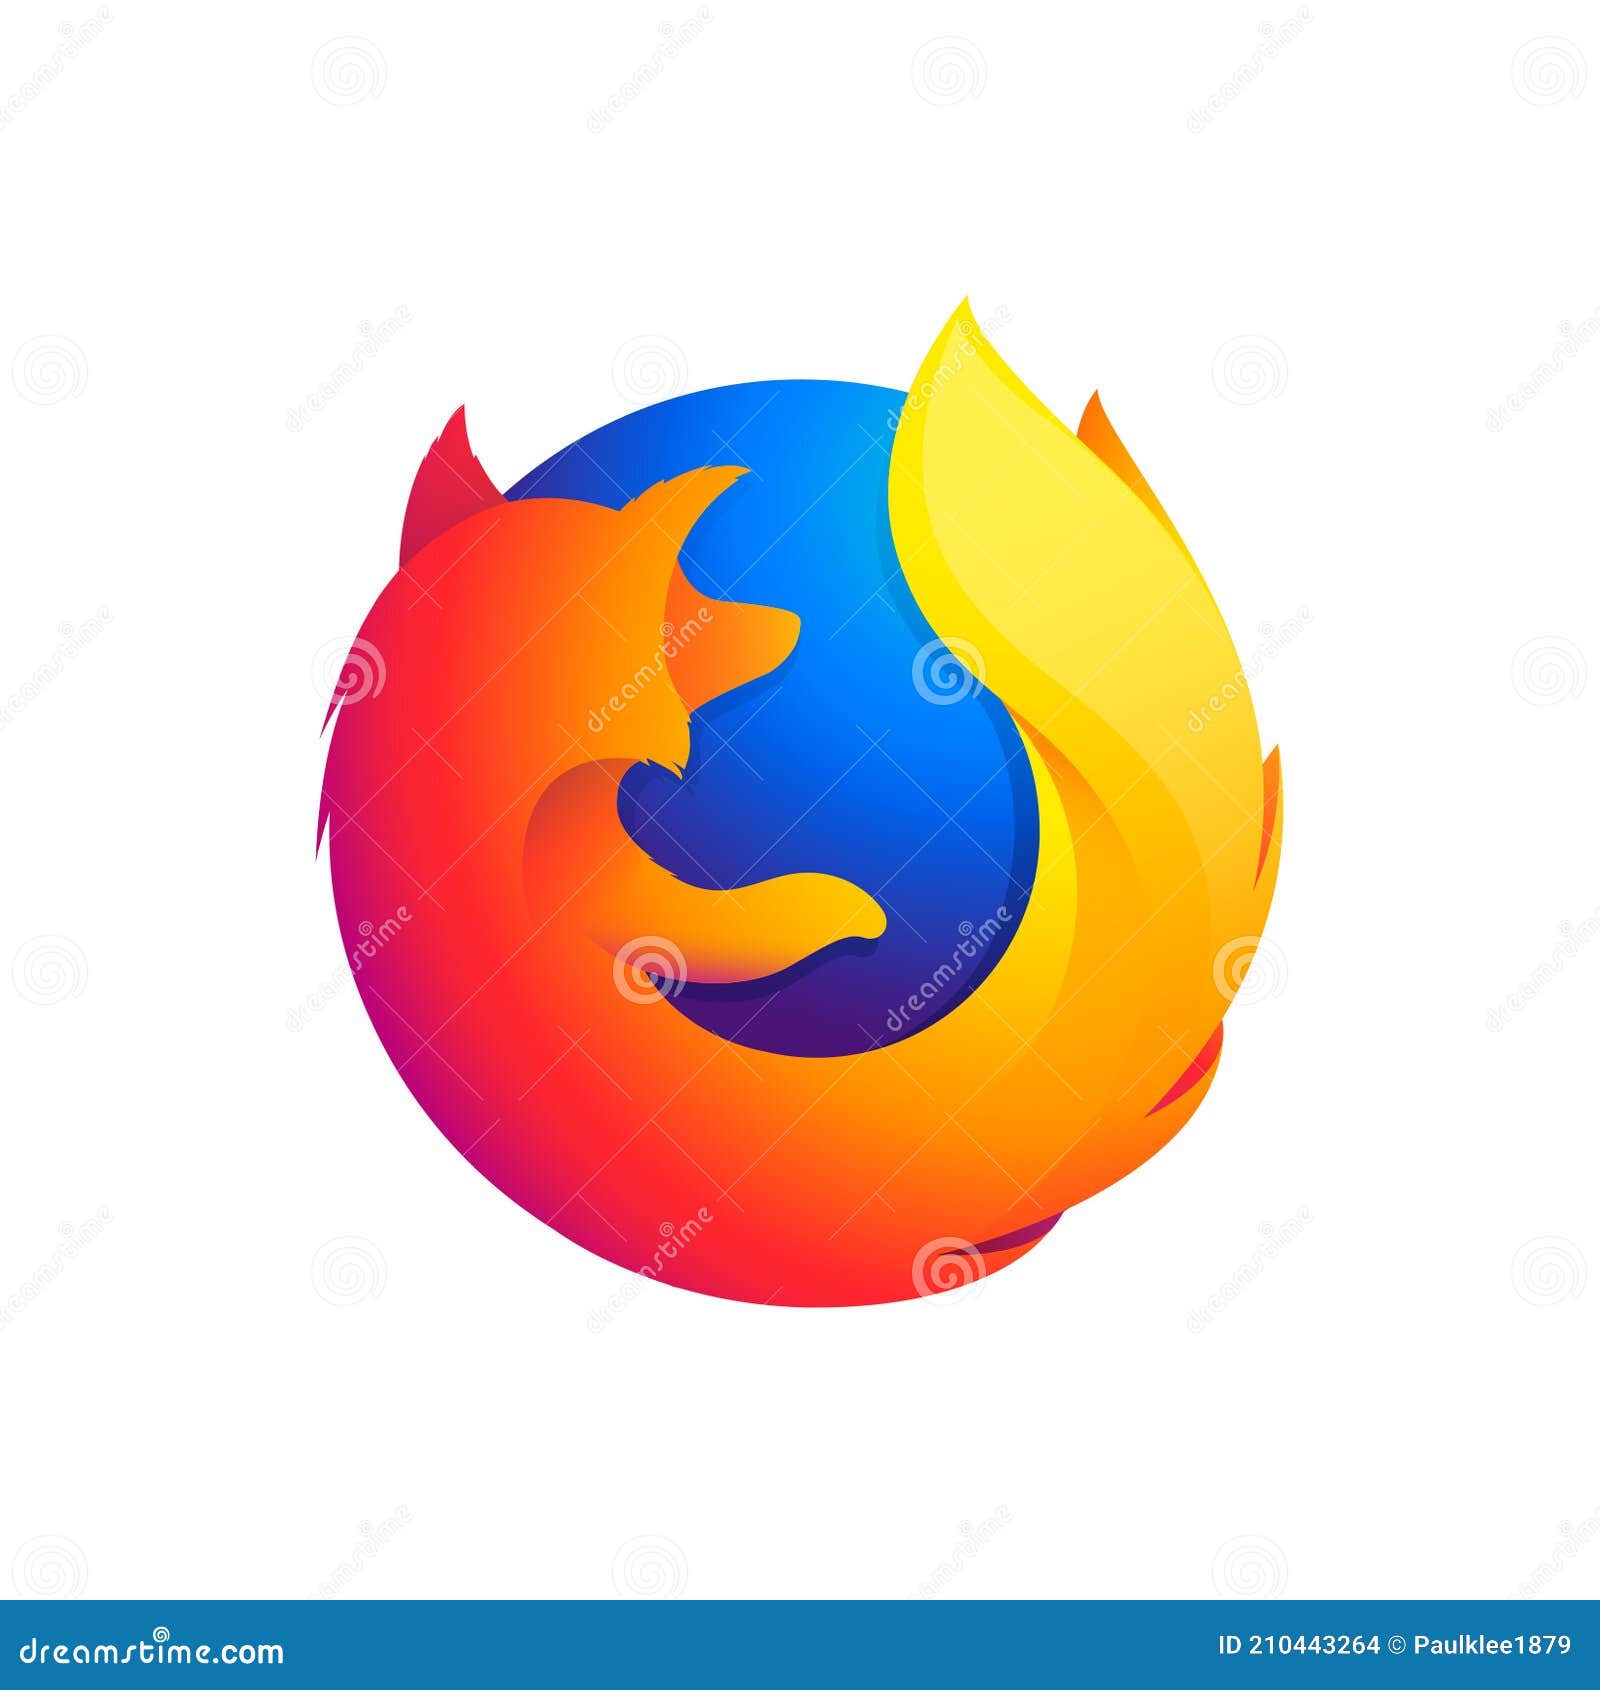 Tìm Hiểu Về Mozilla Firefox - Trình Duyệt Web Tuyệt Vời